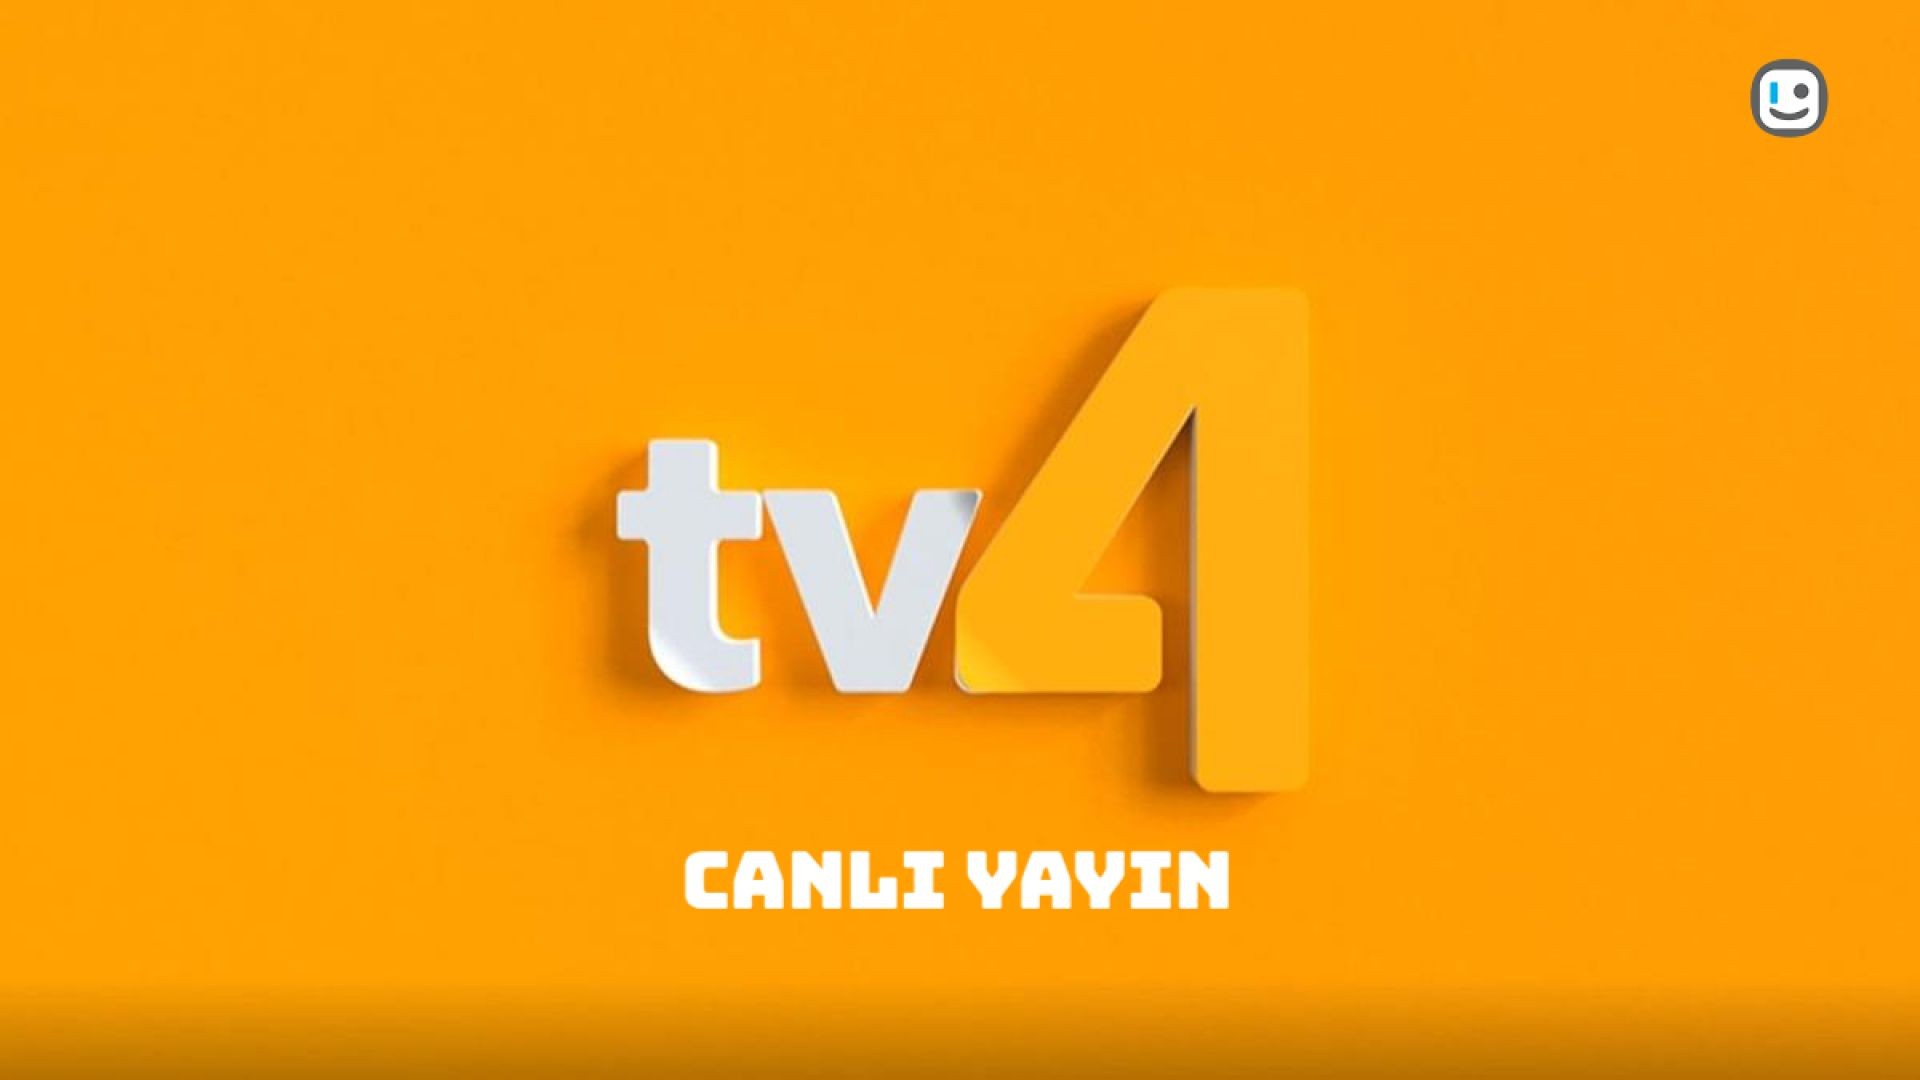 TV4 Canlı Yayın Live Stream